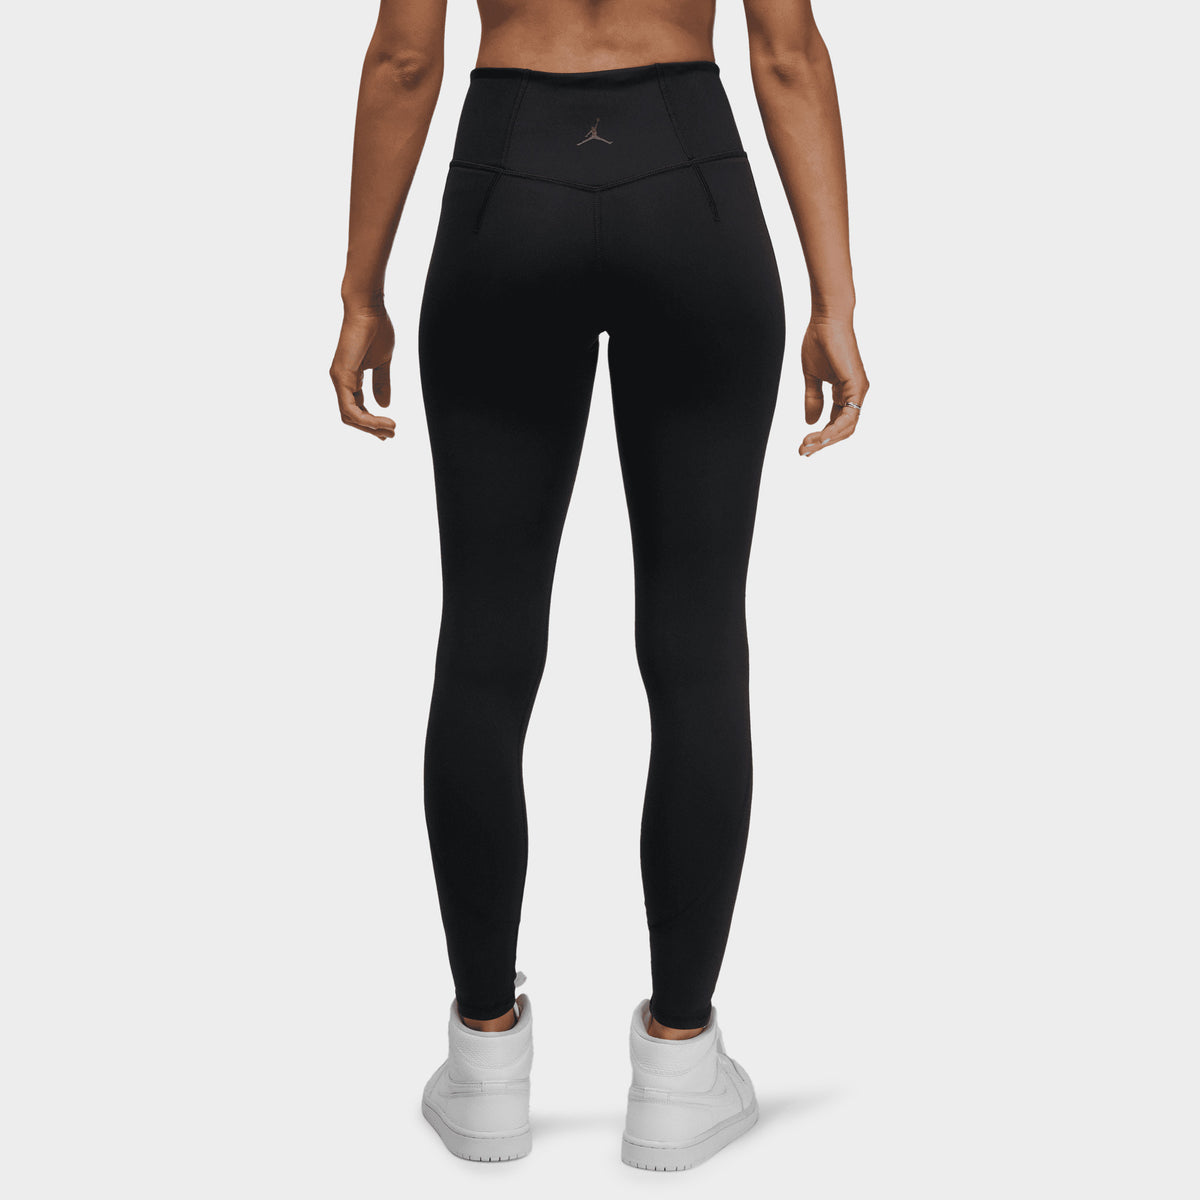 Nike Air Jordan leggings in black